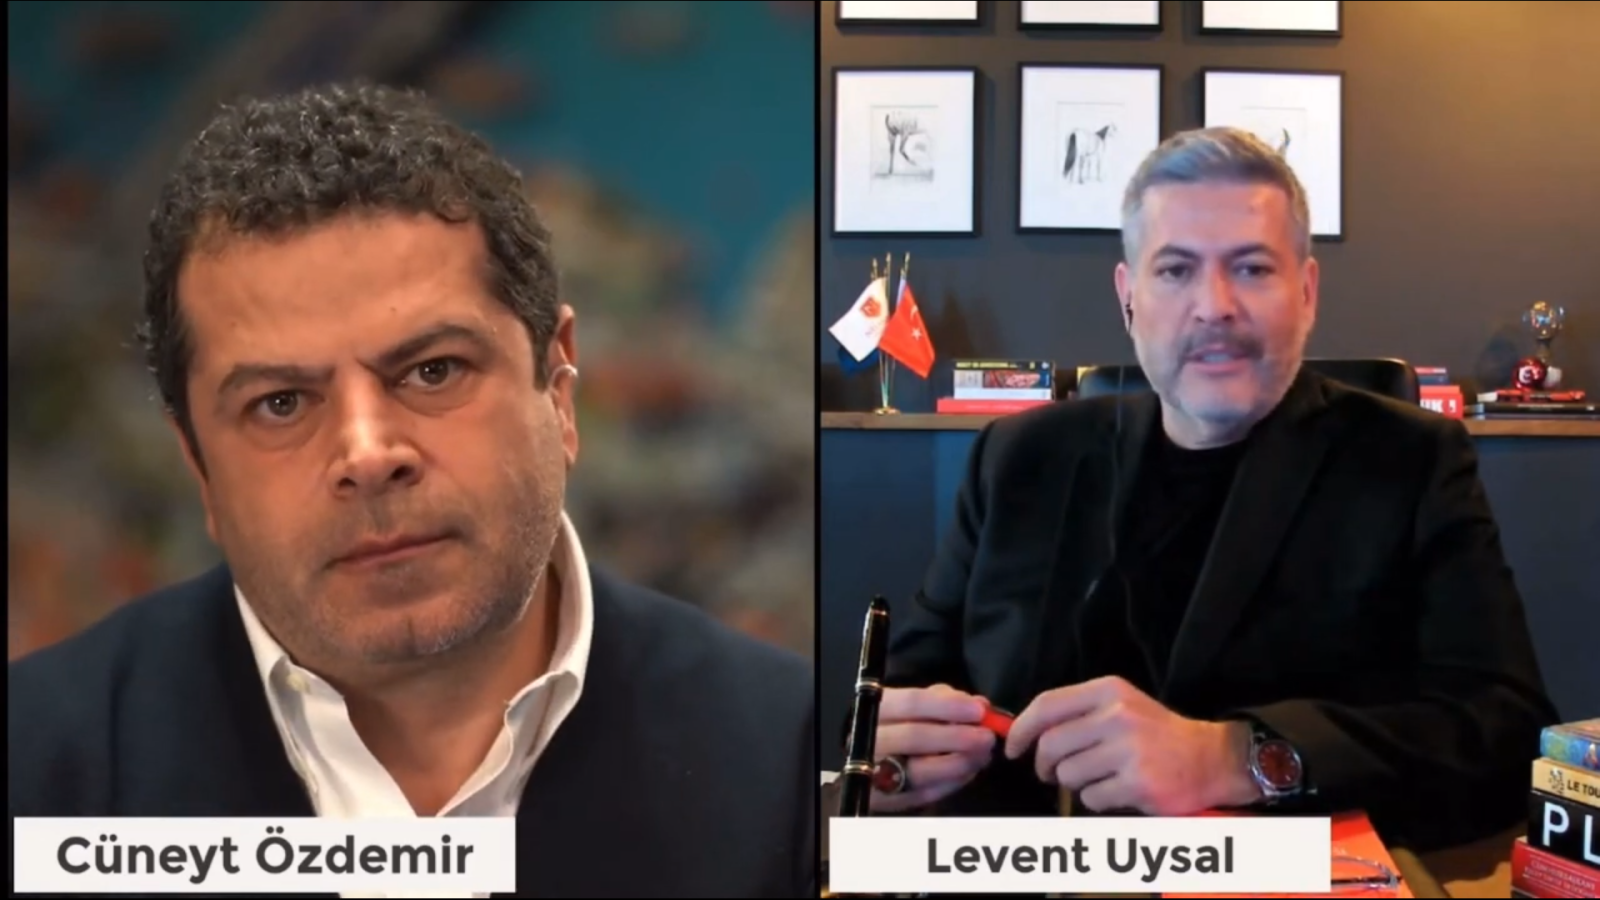 DR. LEVENT UYSAL ON LIVE WITH CÜNEYT ÖZDEMİR